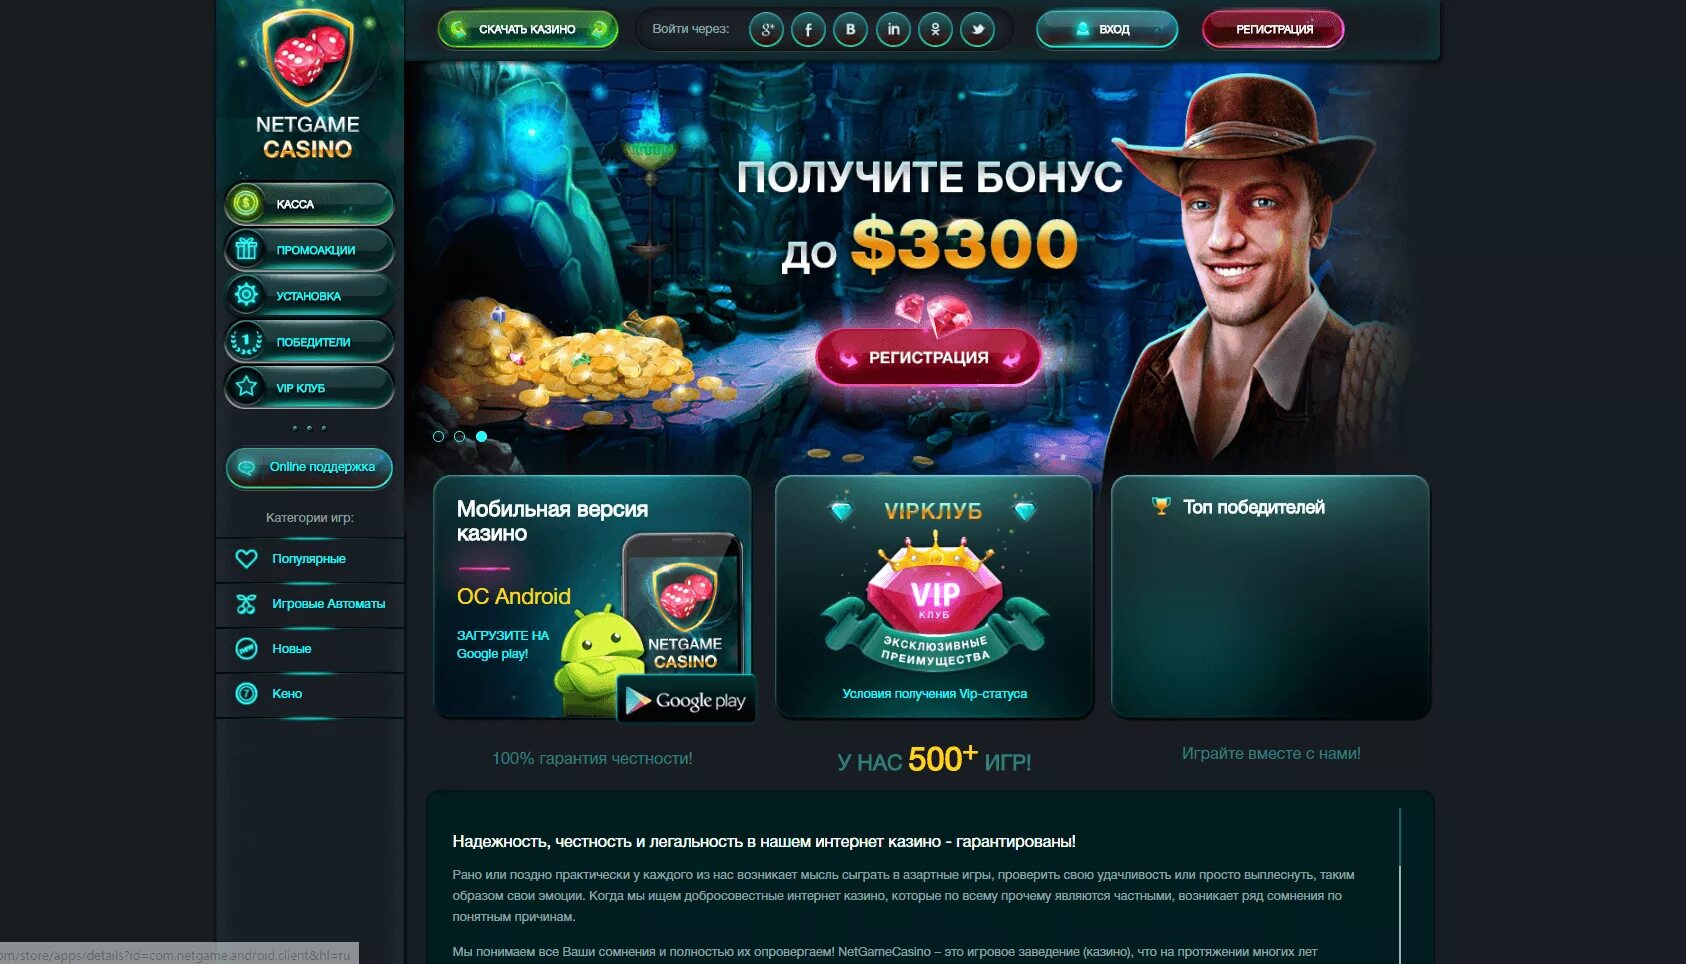 Официальные сайты casino pingotop. Сайты казино. Русские порталы казино. Список казино. Бонусы казино.